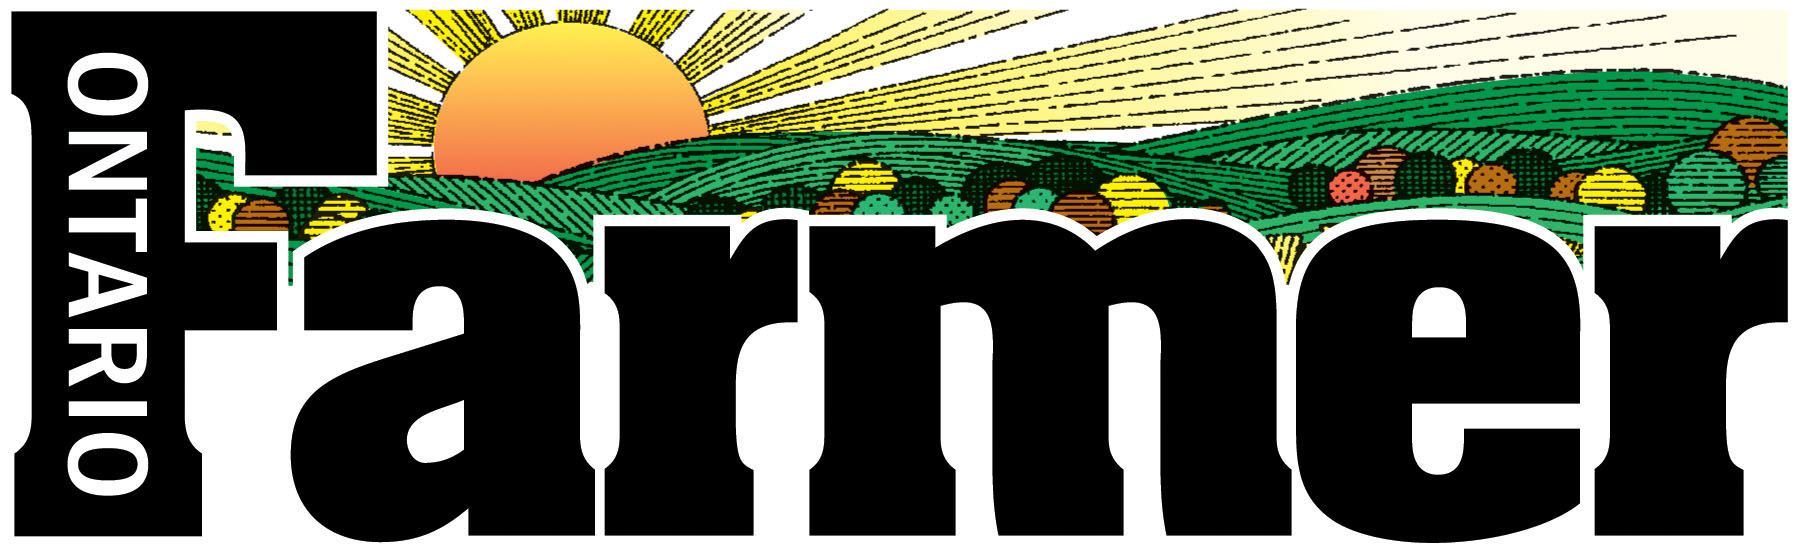 Ontario Farmer Logo